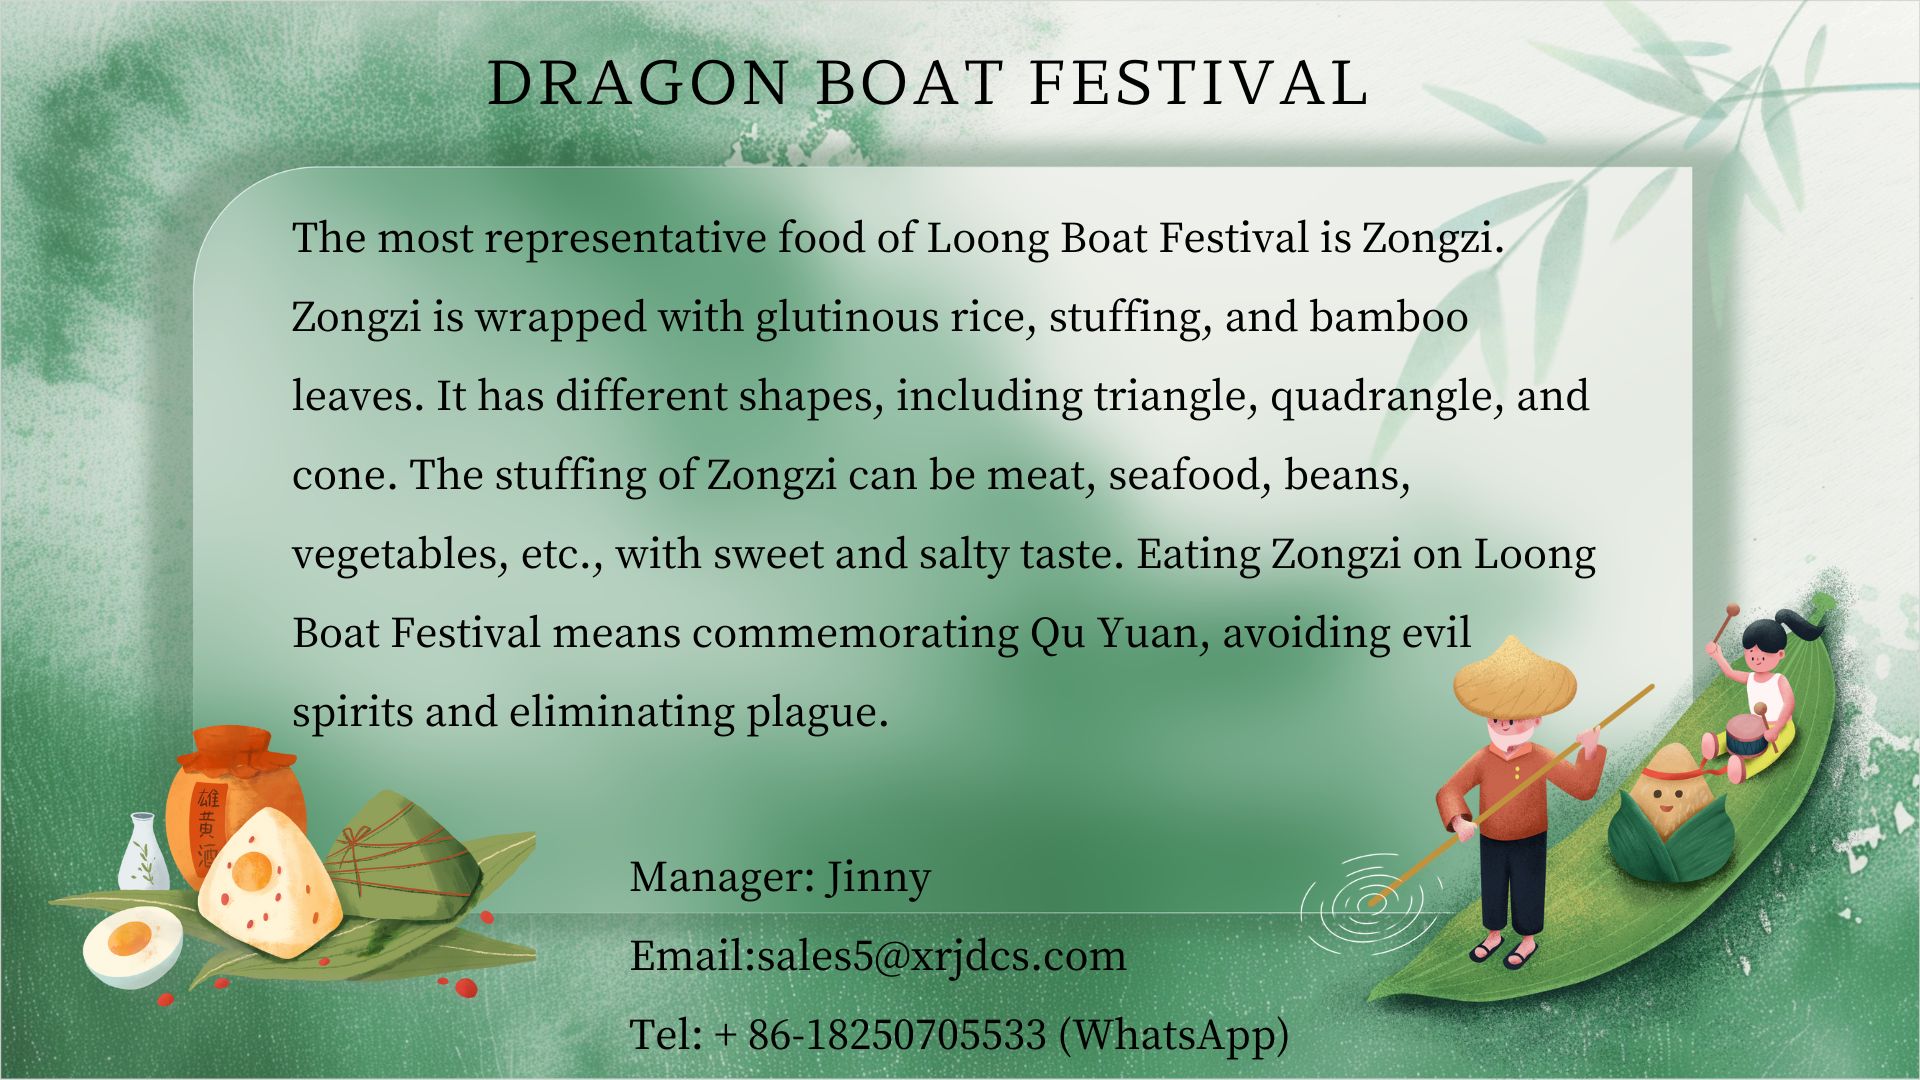 드래곤 보트 페스티벌(Dragon Boat Festival) 휴일은 6.8-6.10입니다.